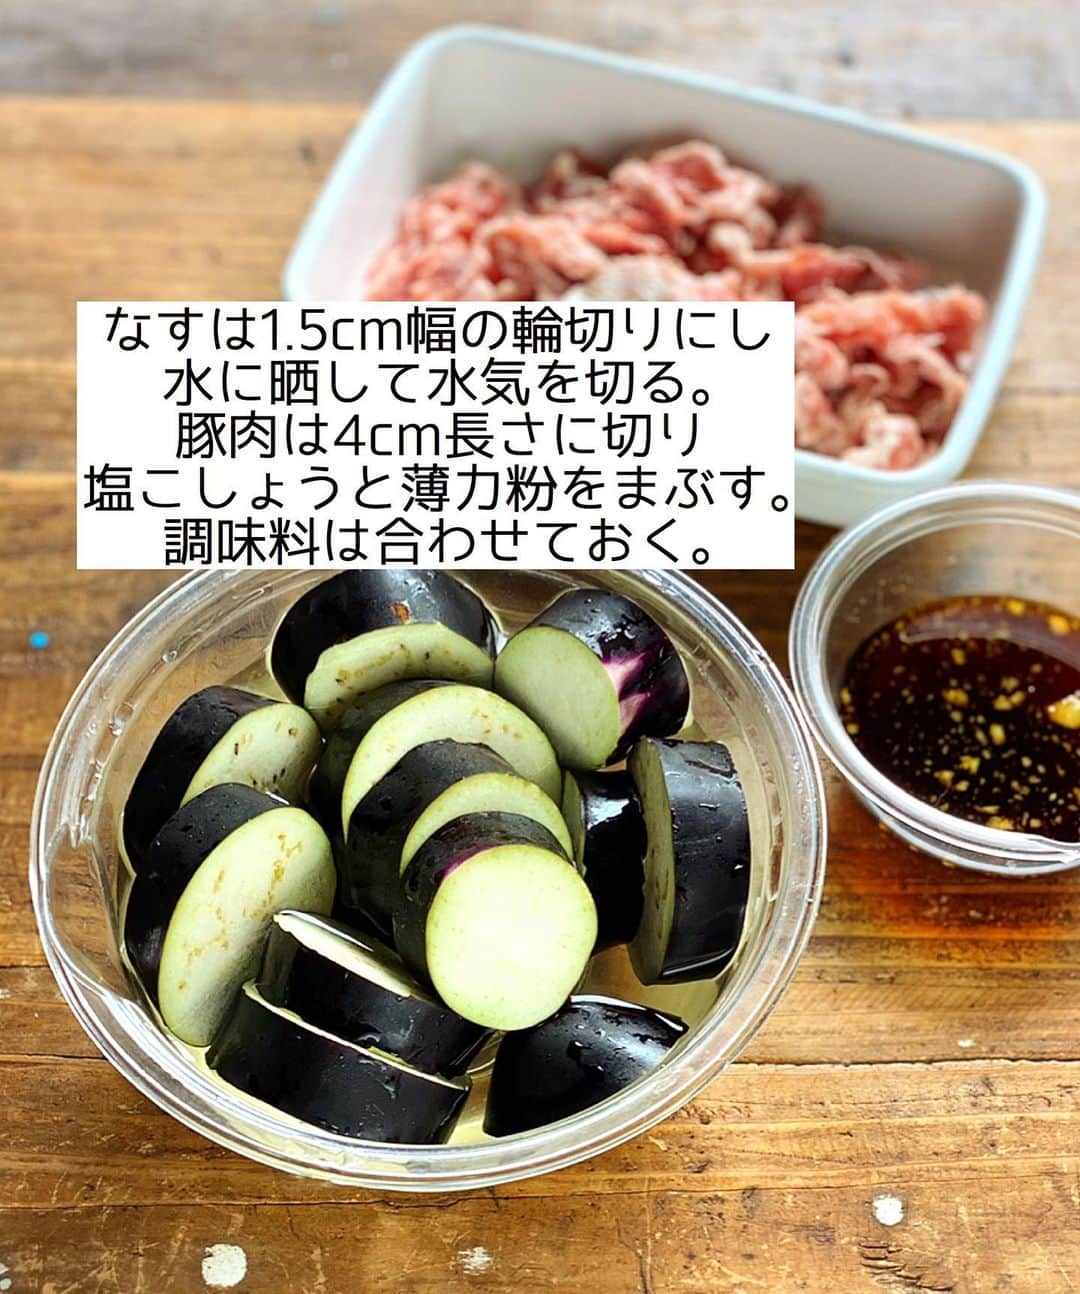 Mizuki【料理ブロガー・簡単レシピ】さんのインスタグラム写真 - (Mizuki【料理ブロガー・簡単レシピ】Instagram)「・ 【#レシピ 】ーーーーーーーーー ♡豚肉のうま照りのっけなす♡ ーーーーーーーーーーーーーーー ⁡ 　 ⁡ おはようございます(*^^*) ⁡ 今日ご紹介させていただくのは \ 豚肉のうま照りのっけなす / ⁡ とろっとジューシーななすに こってり甘辛味の豚肉をのせて ボリューム満点に仕上げました♩ なすは焼くだけ 豚肉は炒めるだけの 超簡単レシピです(*´艸`) ⁡ これ、とってもごはんに合うので よかったらお試し下さいね(*^^*) ⁡ ⁡ ⁡ ＿＿＿＿＿＿＿＿＿＿＿＿＿＿＿＿＿＿＿＿＿ 【2人分】 なす...2本 豚こま切れ肉...200g 塩こしょう...少々 薄力粉...大1 サラダ油・ごま油...各大1 ●醤油・酒・みりん...各大1.5 ●砂糖...大1 ●生姜チューブ...2cm 万能ねぎ...適量 ⁡ 1.なすは1.5cm幅の輪切りにし、水に晒して水気を切る。豚肉は塩こしょうと薄力粉をまぶす。●は合わせておく。 2.フライパンにサラダ油とごま油を入れて中火で熱し、なすを返しながら4分程焼いて器に盛る。 3.そのままのフライパンで豚肉を炒め、火が通ったら●を加えて煮からめる。なすにのせ、ねぎをトッピングする。 ￣￣￣￣￣￣￣￣￣￣￣￣￣￣￣￣￣￣￣￣￣ ⁡ ⁡ ⁡ 《ポイント》 ♦︎工程3で豚肉を炒める時、必要であれば(ほぐれにくければ)サラダ油を少し加えて下さい♩ ⁡ ⁡ ⁡ ⁡ ⁡ ⁡ ⁡ ⁡ \ 新刊予約開始しました /(9月24日発売) ⁡ 🔹🔹🔹🔹🔹🔹🔹🔹🔹🔹🔹🔹 今日のごはんこれに決まり！ #Mizukiのレシピノート 決定版 500品 🔹🔹🔹🔹🔹🔹🔹🔹🔹🔹🔹🔹 ⁡ 総レシピ6000点の中からレシピを厳選！ まさかの【500レシピ掲載】しました⭐️ (もはや辞典...) ⁡ 肉や魚のメインおかずはもちろん 副菜、丼、麺、スープ、お菓子 ハレの日のレシピ、鍋のレシピまで 全てこの一冊で完結！！ ⁡ ⁡ 🎁新刊予約でエプロンが当たる🎁 プレゼントキャンペーン実施中 ￣￣￣￣￣￣￣￣￣￣￣￣￣￣￣￣￣￣￣￣￣ 【応募方法】 ❶1枚目に表紙画像 2枚目にAmazonで予約したことがわかる画像 (どちらもスクショでOK)を貼りつける。 ❷ハッシュタグ【#Mizukiのレシピノート 】 をつけて投稿！ ￣￣￣￣￣￣￣￣￣￣￣￣￣￣￣￣￣￣￣￣￣￣ ⁡ ⁡ ⁡ ⁡ ⁡ ＿＿＿＿＿＿＿＿＿＿＿＿＿＿＿＿ 🟥YouTube 料理動画配信中🟥 ￣￣￣￣￣￣￣￣￣￣￣￣￣￣￣￣ 料理とお菓子の簡単レシピを ご紹介しています☺️💓 ⁡ 【奇跡のキッチン】で検索🔍 (ハイライトからも飛べます✨) ￣￣￣￣￣￣￣￣￣￣￣￣￣￣￣￣ ⁡ ⁡ ⁡ ＿＿＿＿＿＿＿＿＿＿＿＿＿＿＿＿ 🔶🔶recipe book🔶🔶 ￣￣￣￣￣￣￣￣￣￣￣￣￣￣￣￣ ホケミレシピの決定版♩ \はじめてでも失敗しない/ 📙#ホットケーキミックスのお菓子 ⁡ NHKまる得マガジンテキスト☆ #ホットケーキミックス で ⁡ 📗絶品おやつ&意外なランチ ⁡ しんどくない献立、考えました♩ \𝟣𝟧分でいただきます/ 📕#Mizukiの2品献立 ⁡ 和食をもっとカジュアルに♩ \毎日のごはんがラクになる/ 📘#Mizukiの今どき和食  ＿＿＿＿＿＿＿＿＿＿＿＿＿＿＿＿＿ ⁡ ⁡ ⁡ ⁡ #豚肉のうま照りのっけなすm #豚こま #なす #夏野菜 #mizuki #簡単レシピ #時短レシピ #節約レシピ #料理 #料理初心者  #時短ごはん #節約ごはん #フーディーテーブル #おうちごはん #デリスタグラマー #おうちごはんlover #料理好きな人と繋がりたい #写真好きな人と繋がりたい #foodpick#cooking#recipe #𝗅𝗂𝗇_𝗌𝗍𝖺𝗀𝗋𝖺𝗆𝗆𝖾𝗋#foodporn」8月22日 8時05分 - mizuki_31cafe